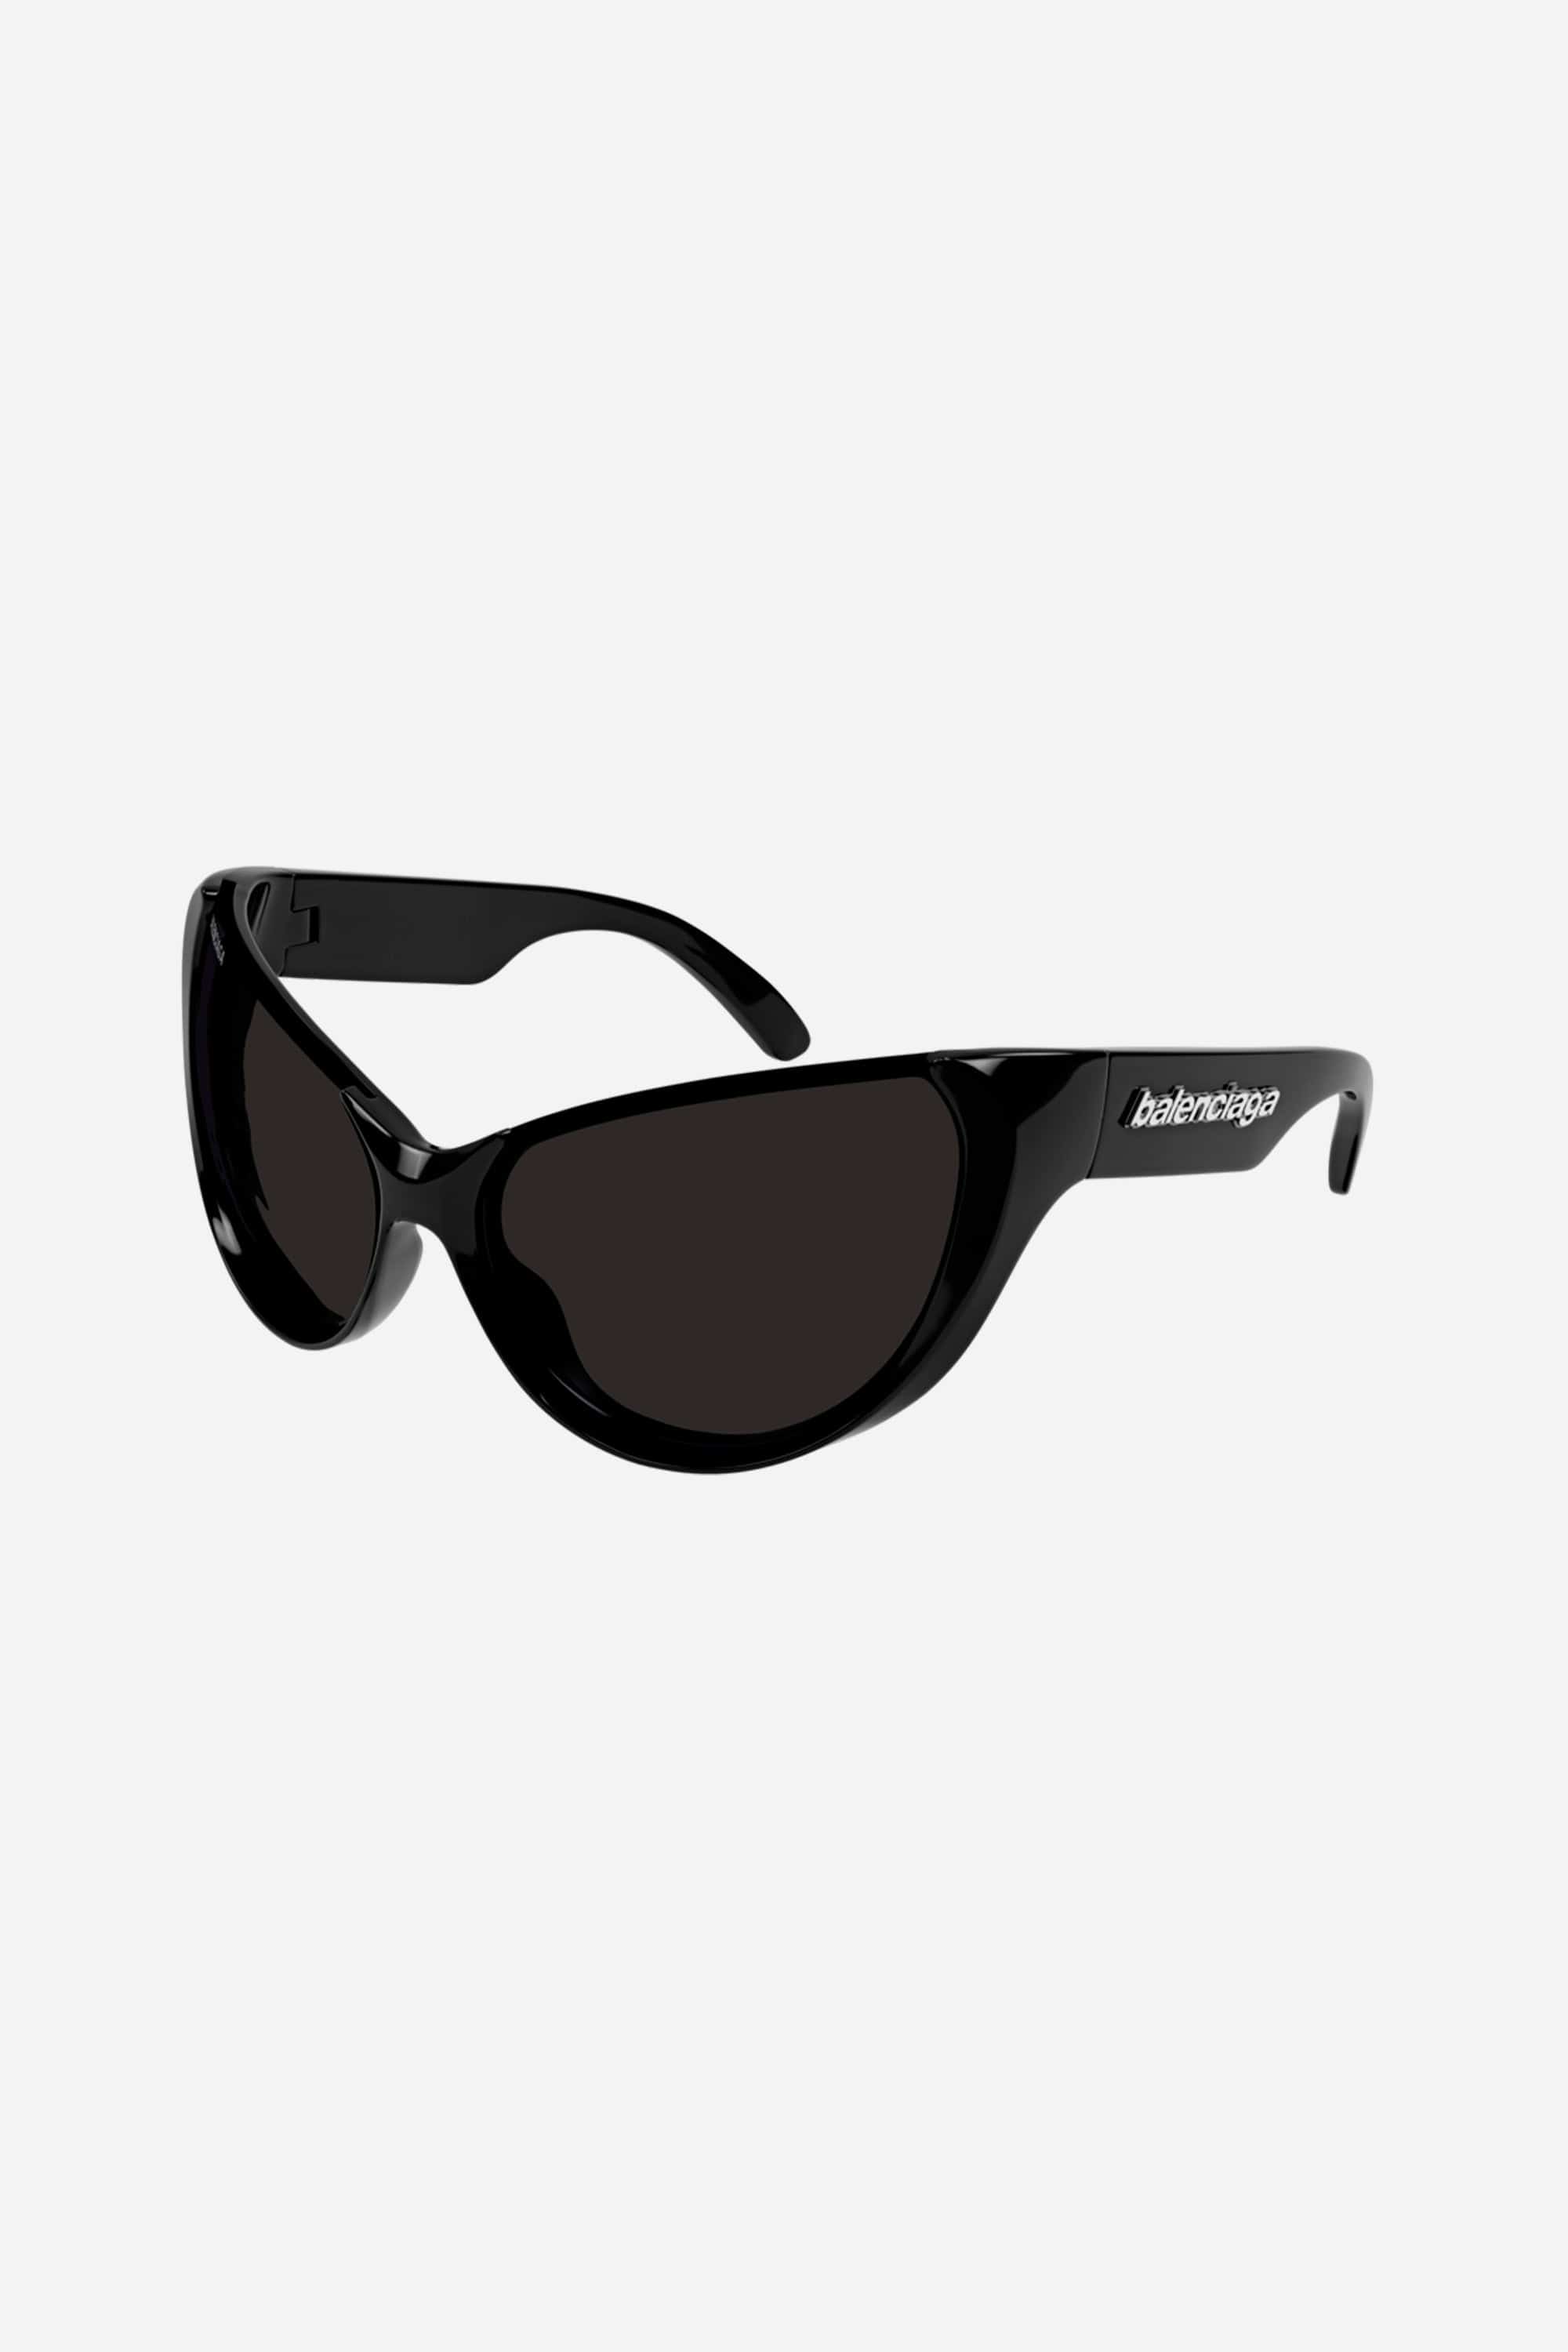 Balenciaga black wrap around sunglasses - Eyewear Club